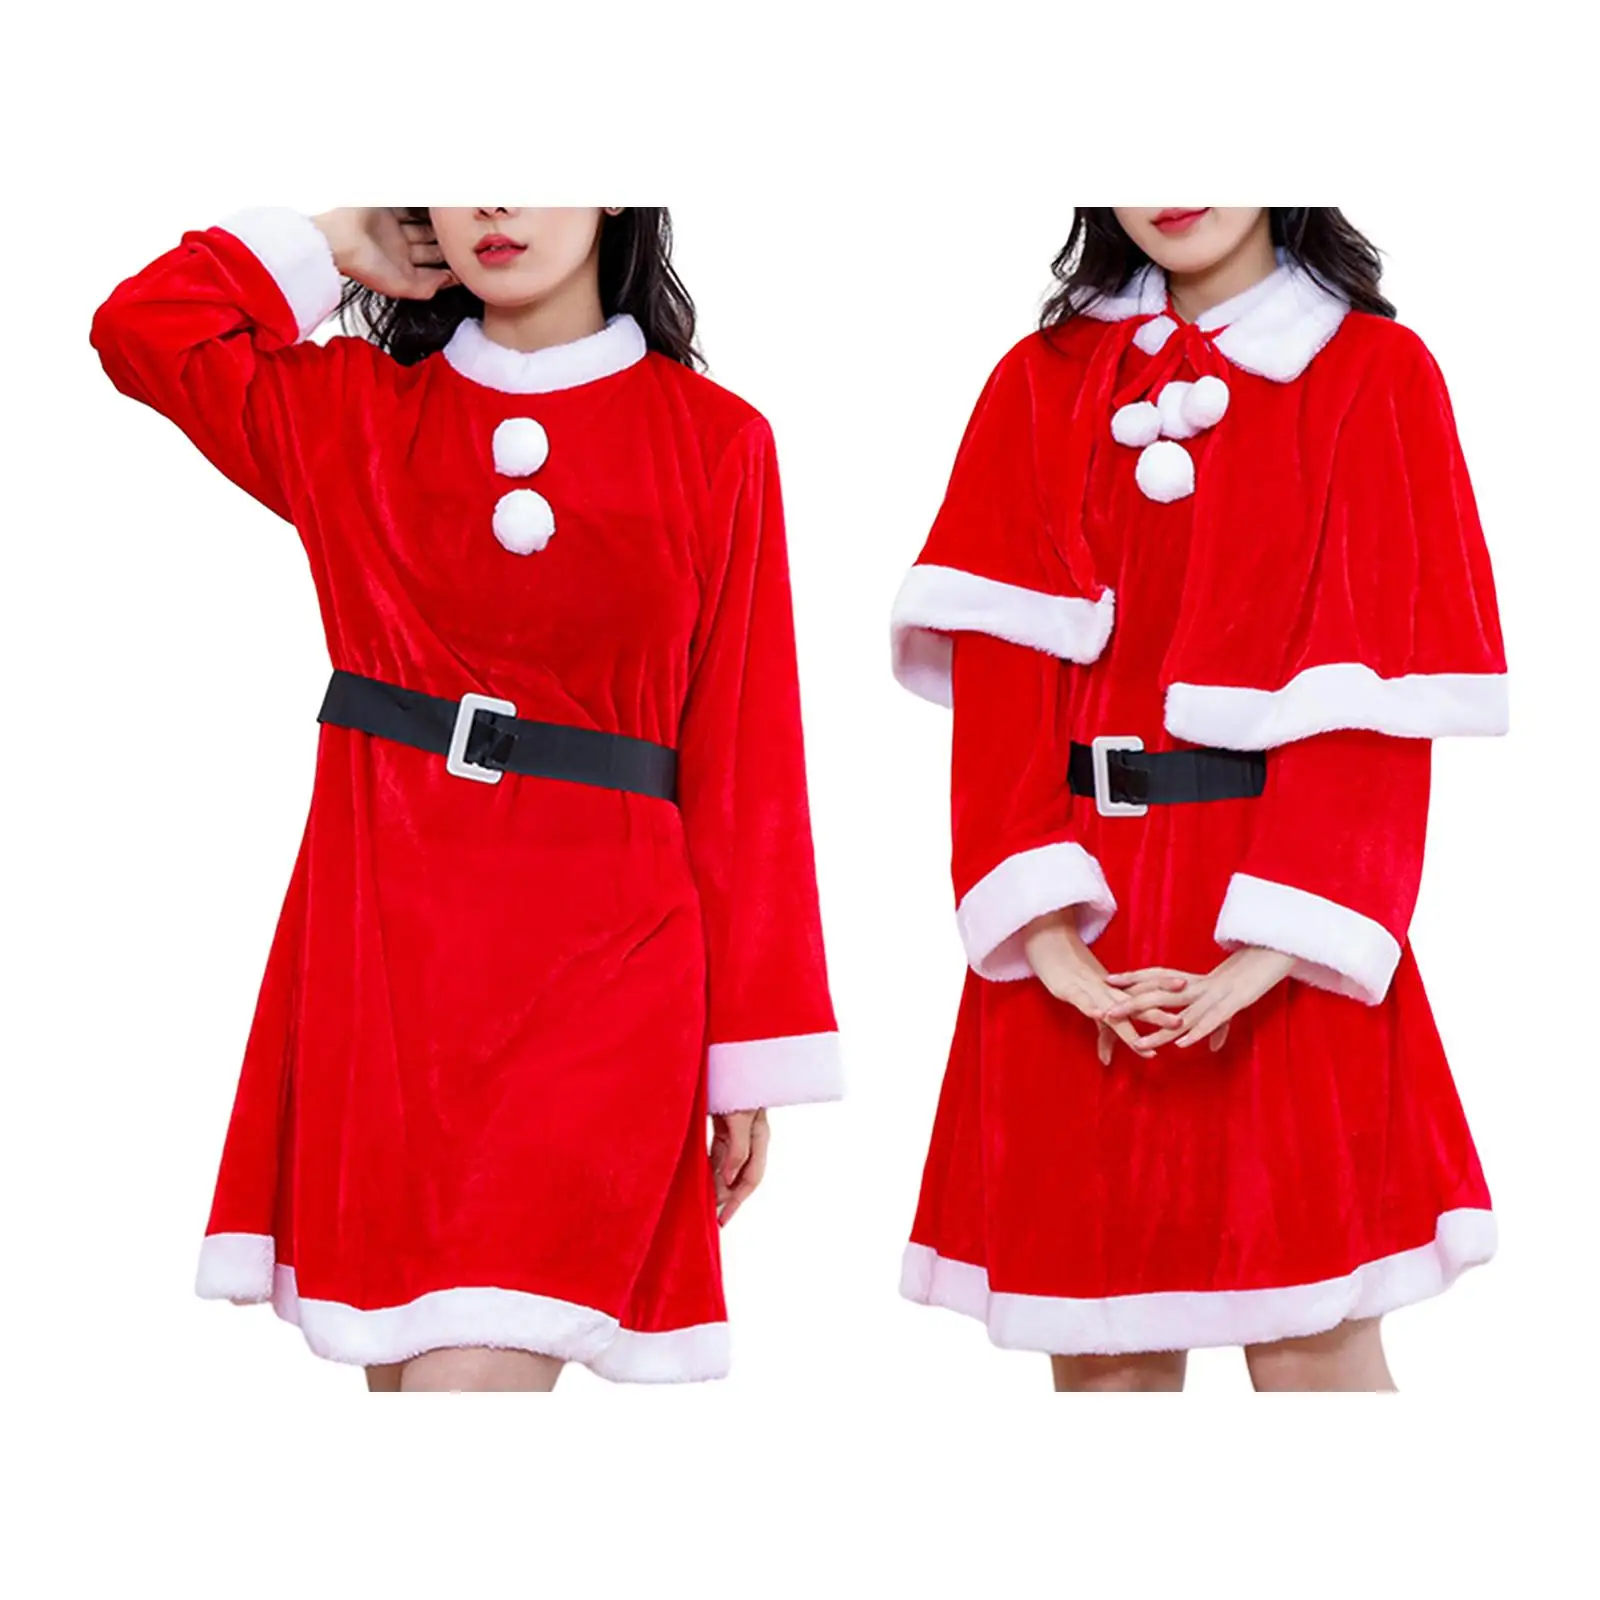 

Рождественское платье Санта-Клауса, Рождественский костюм Санта-Клауса, Рождественская одежда для праздника, Хэллоуина, маскарада, сценического представления, Марди Гра